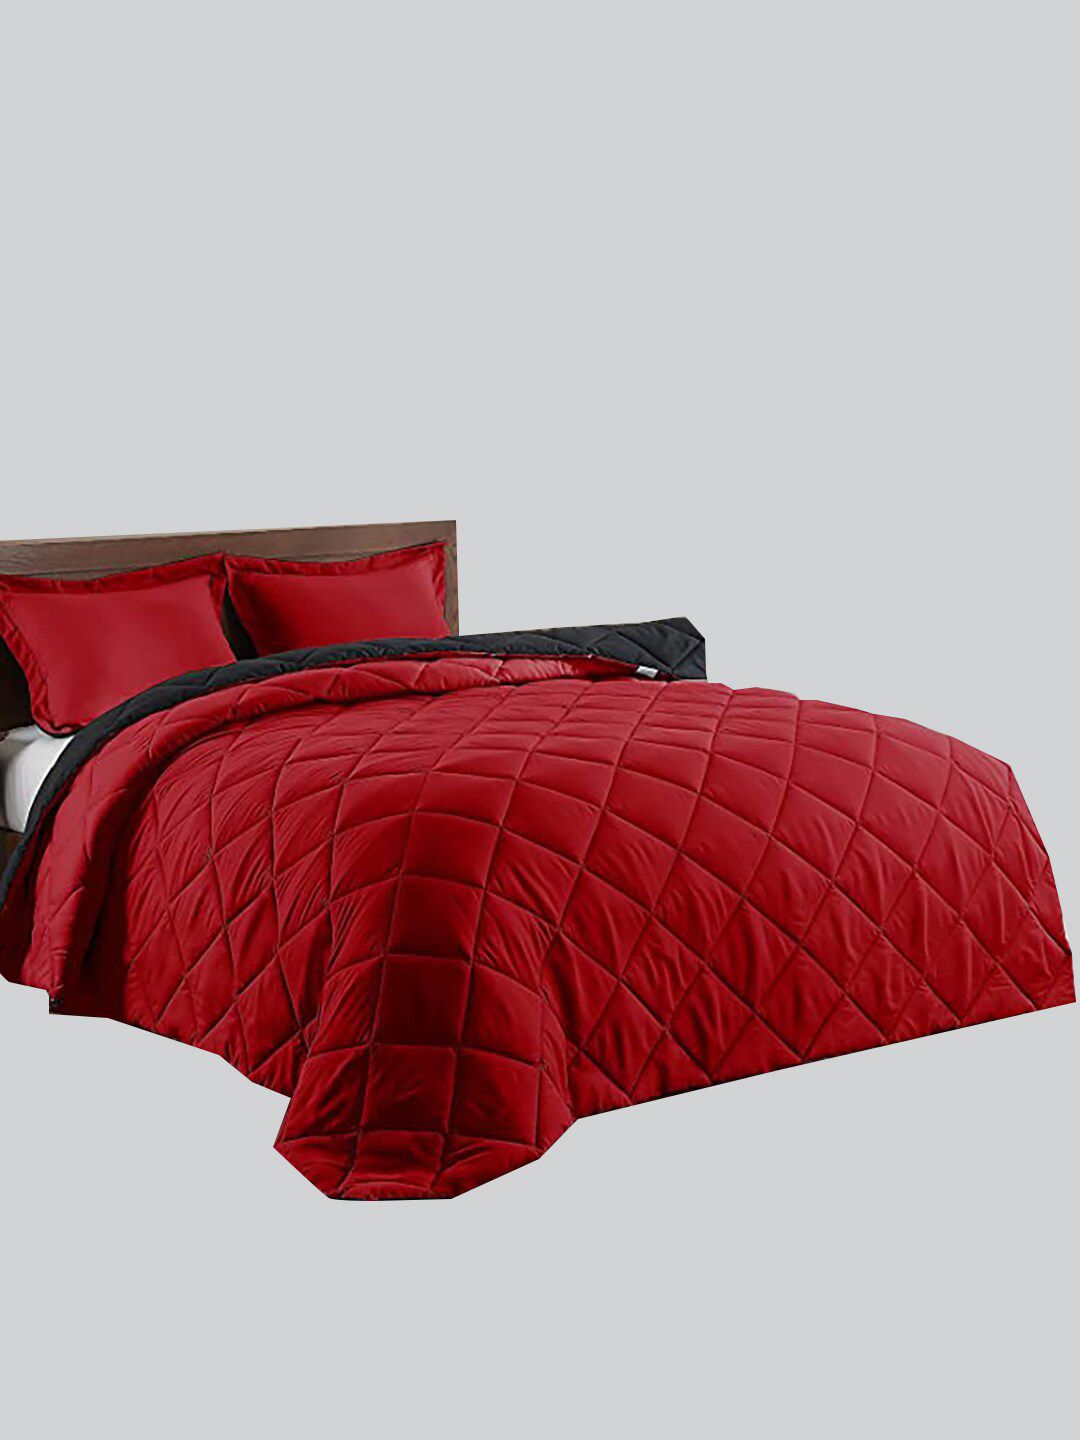 RAASO Maroon & Black Microfiber AC Room Double Bed Blanket Price in India